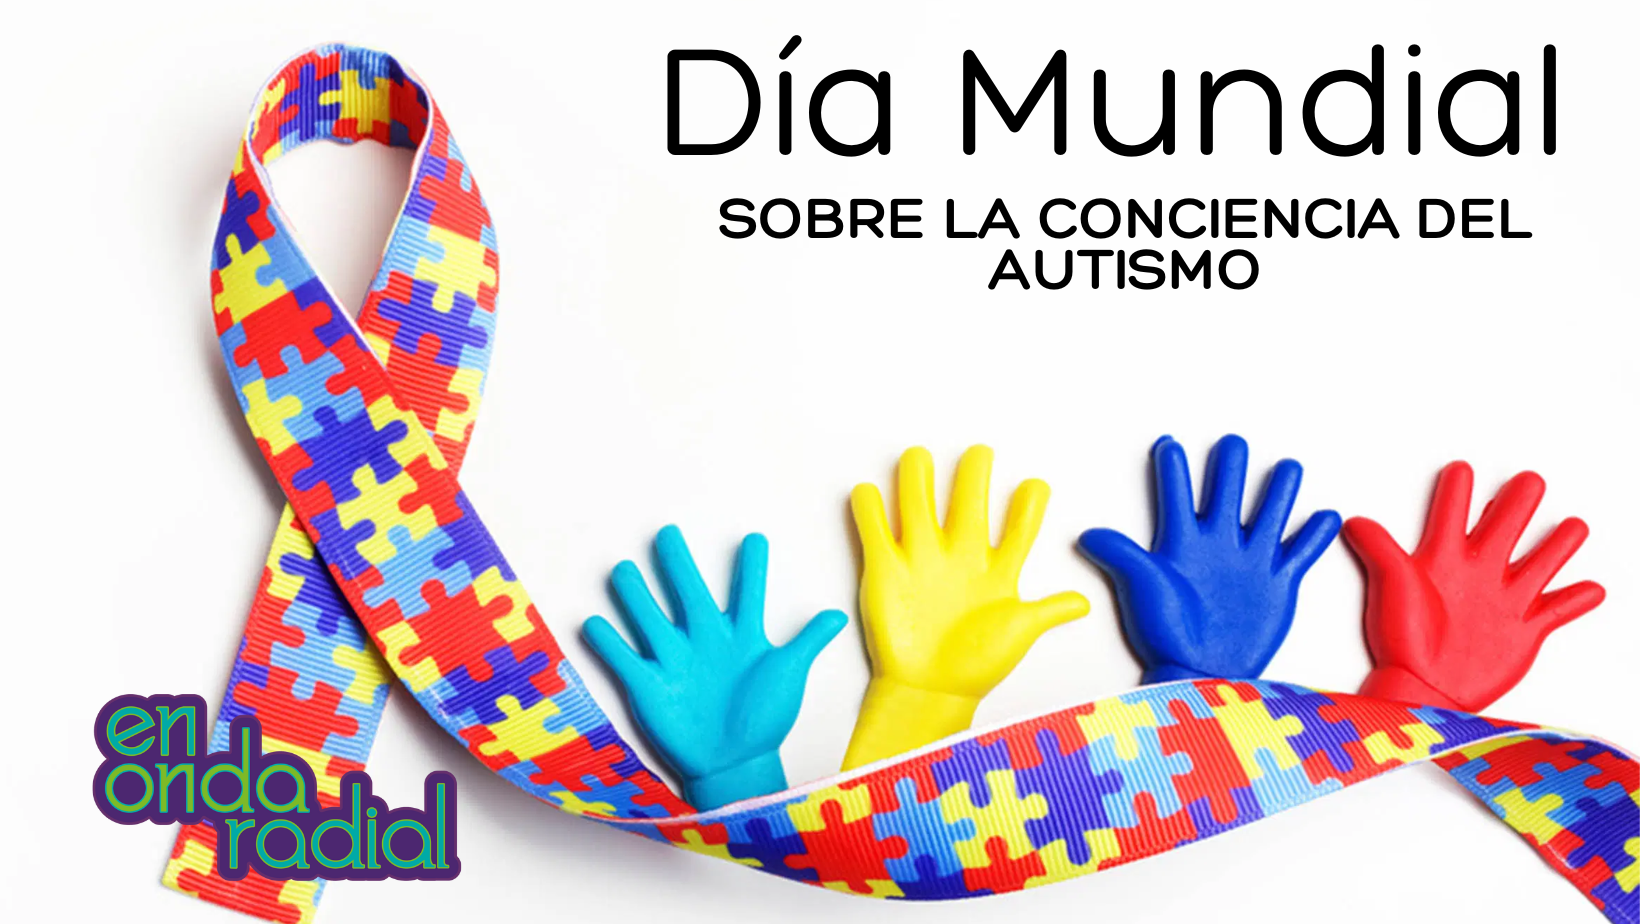 Día mundial sobre la conciencia del autismo